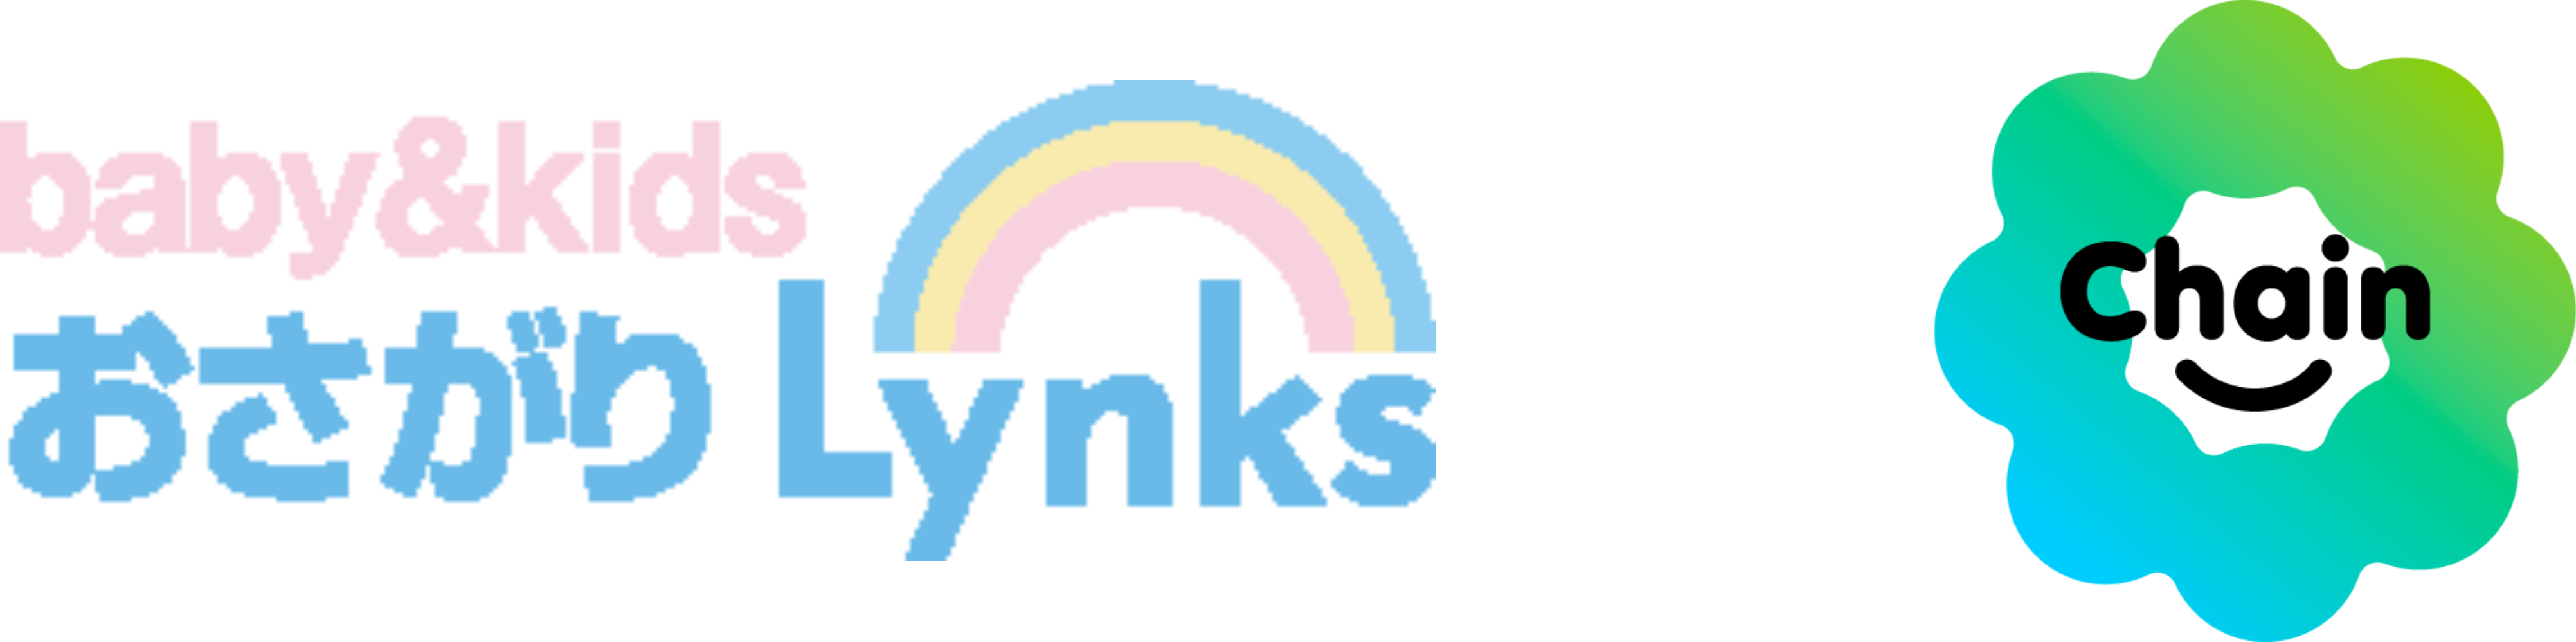 LynksxChainコラボ企画のロゴ